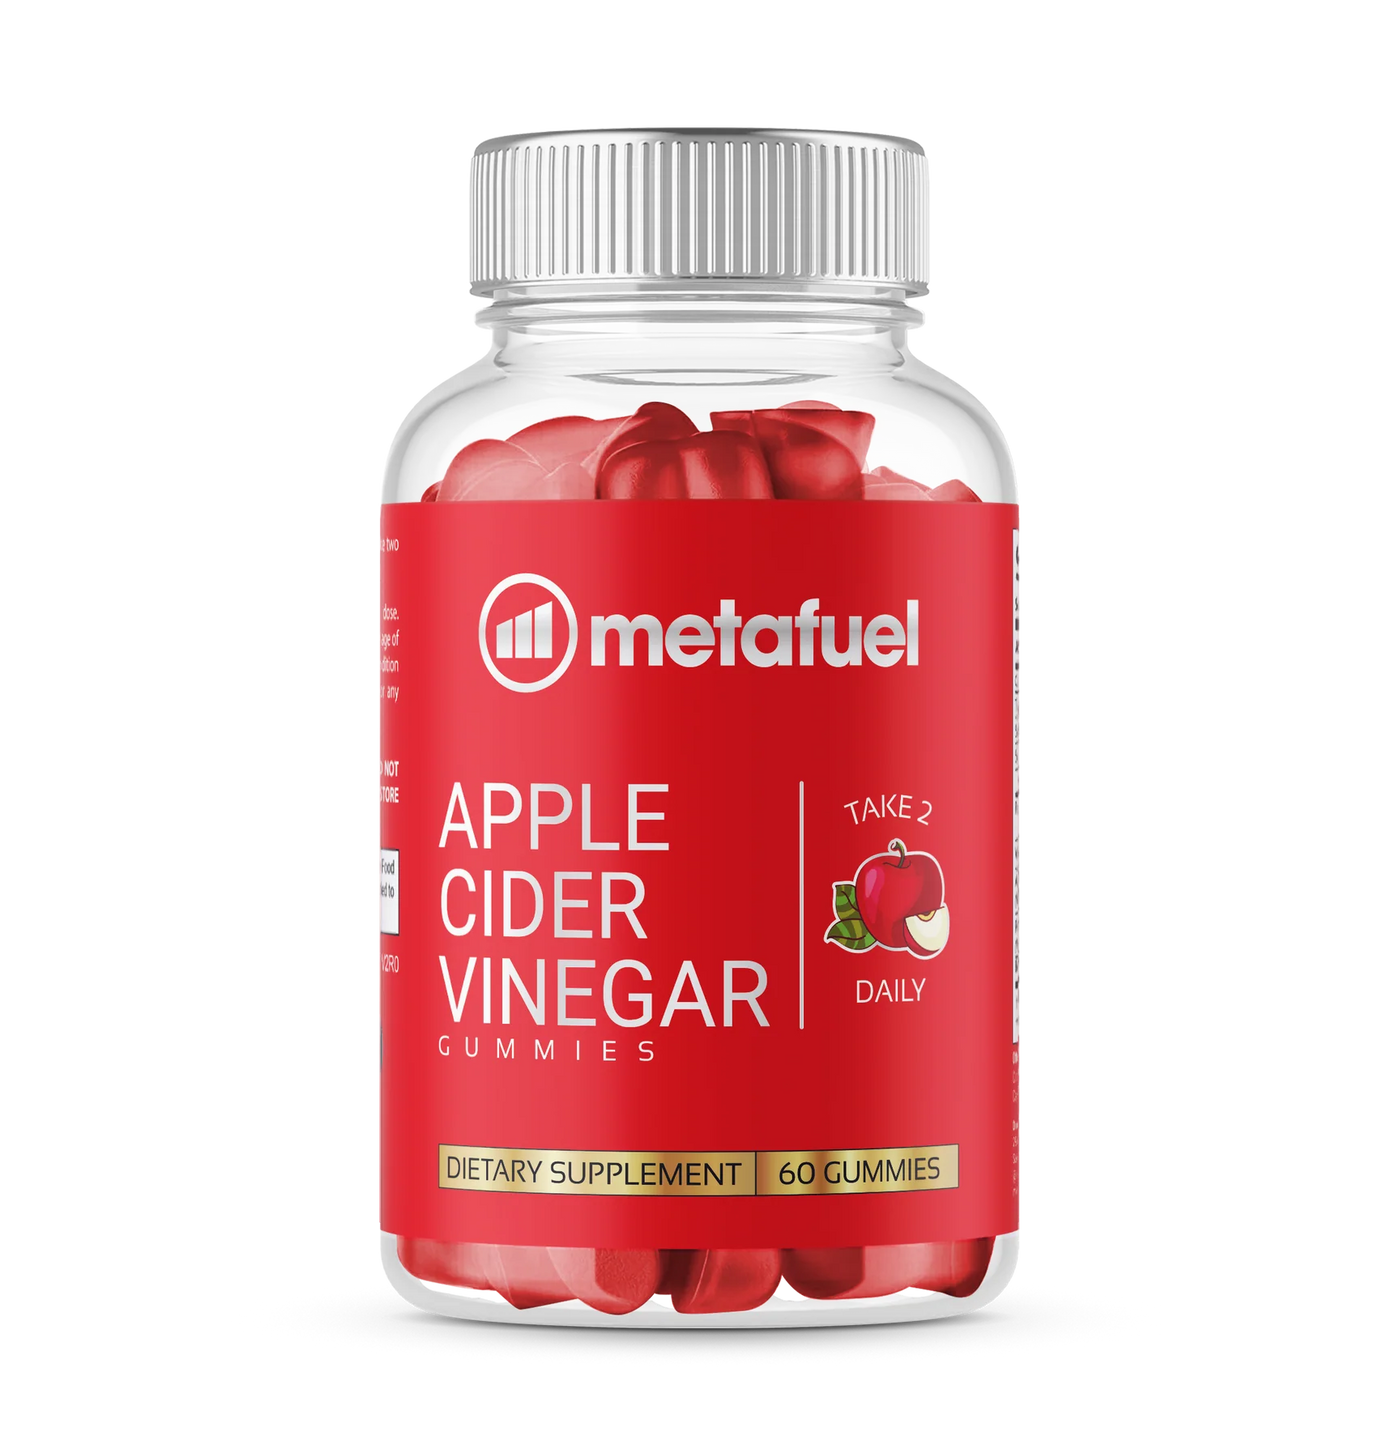 Metafuel Keto Apple Cider Vinegar Gummies